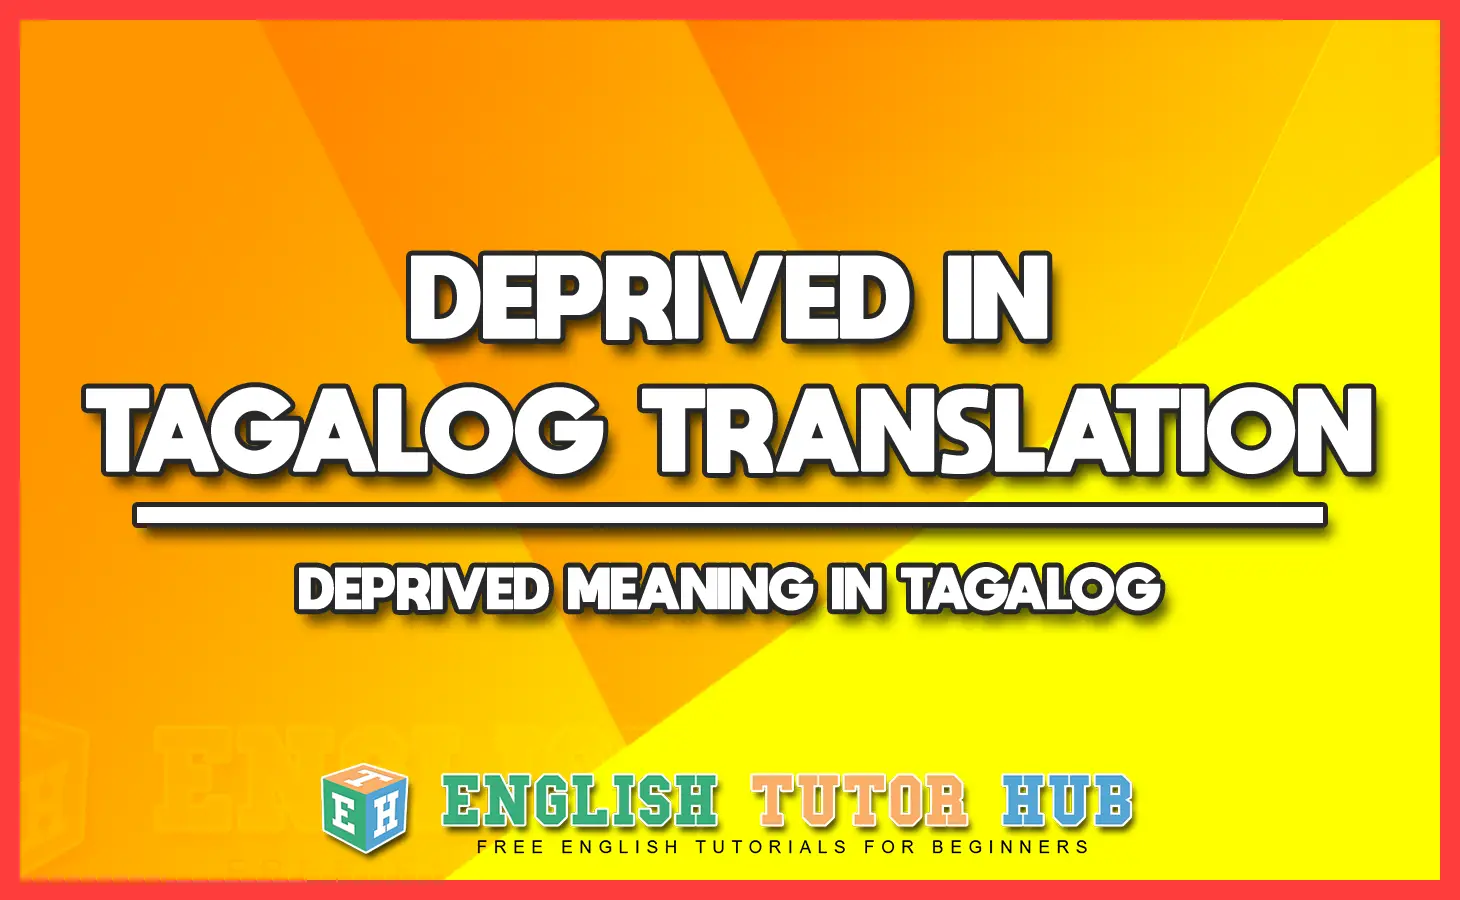 DEPRIVED IN TAGALOG TRANSLATION - DEPRIVED MEANING IN TAGALOG